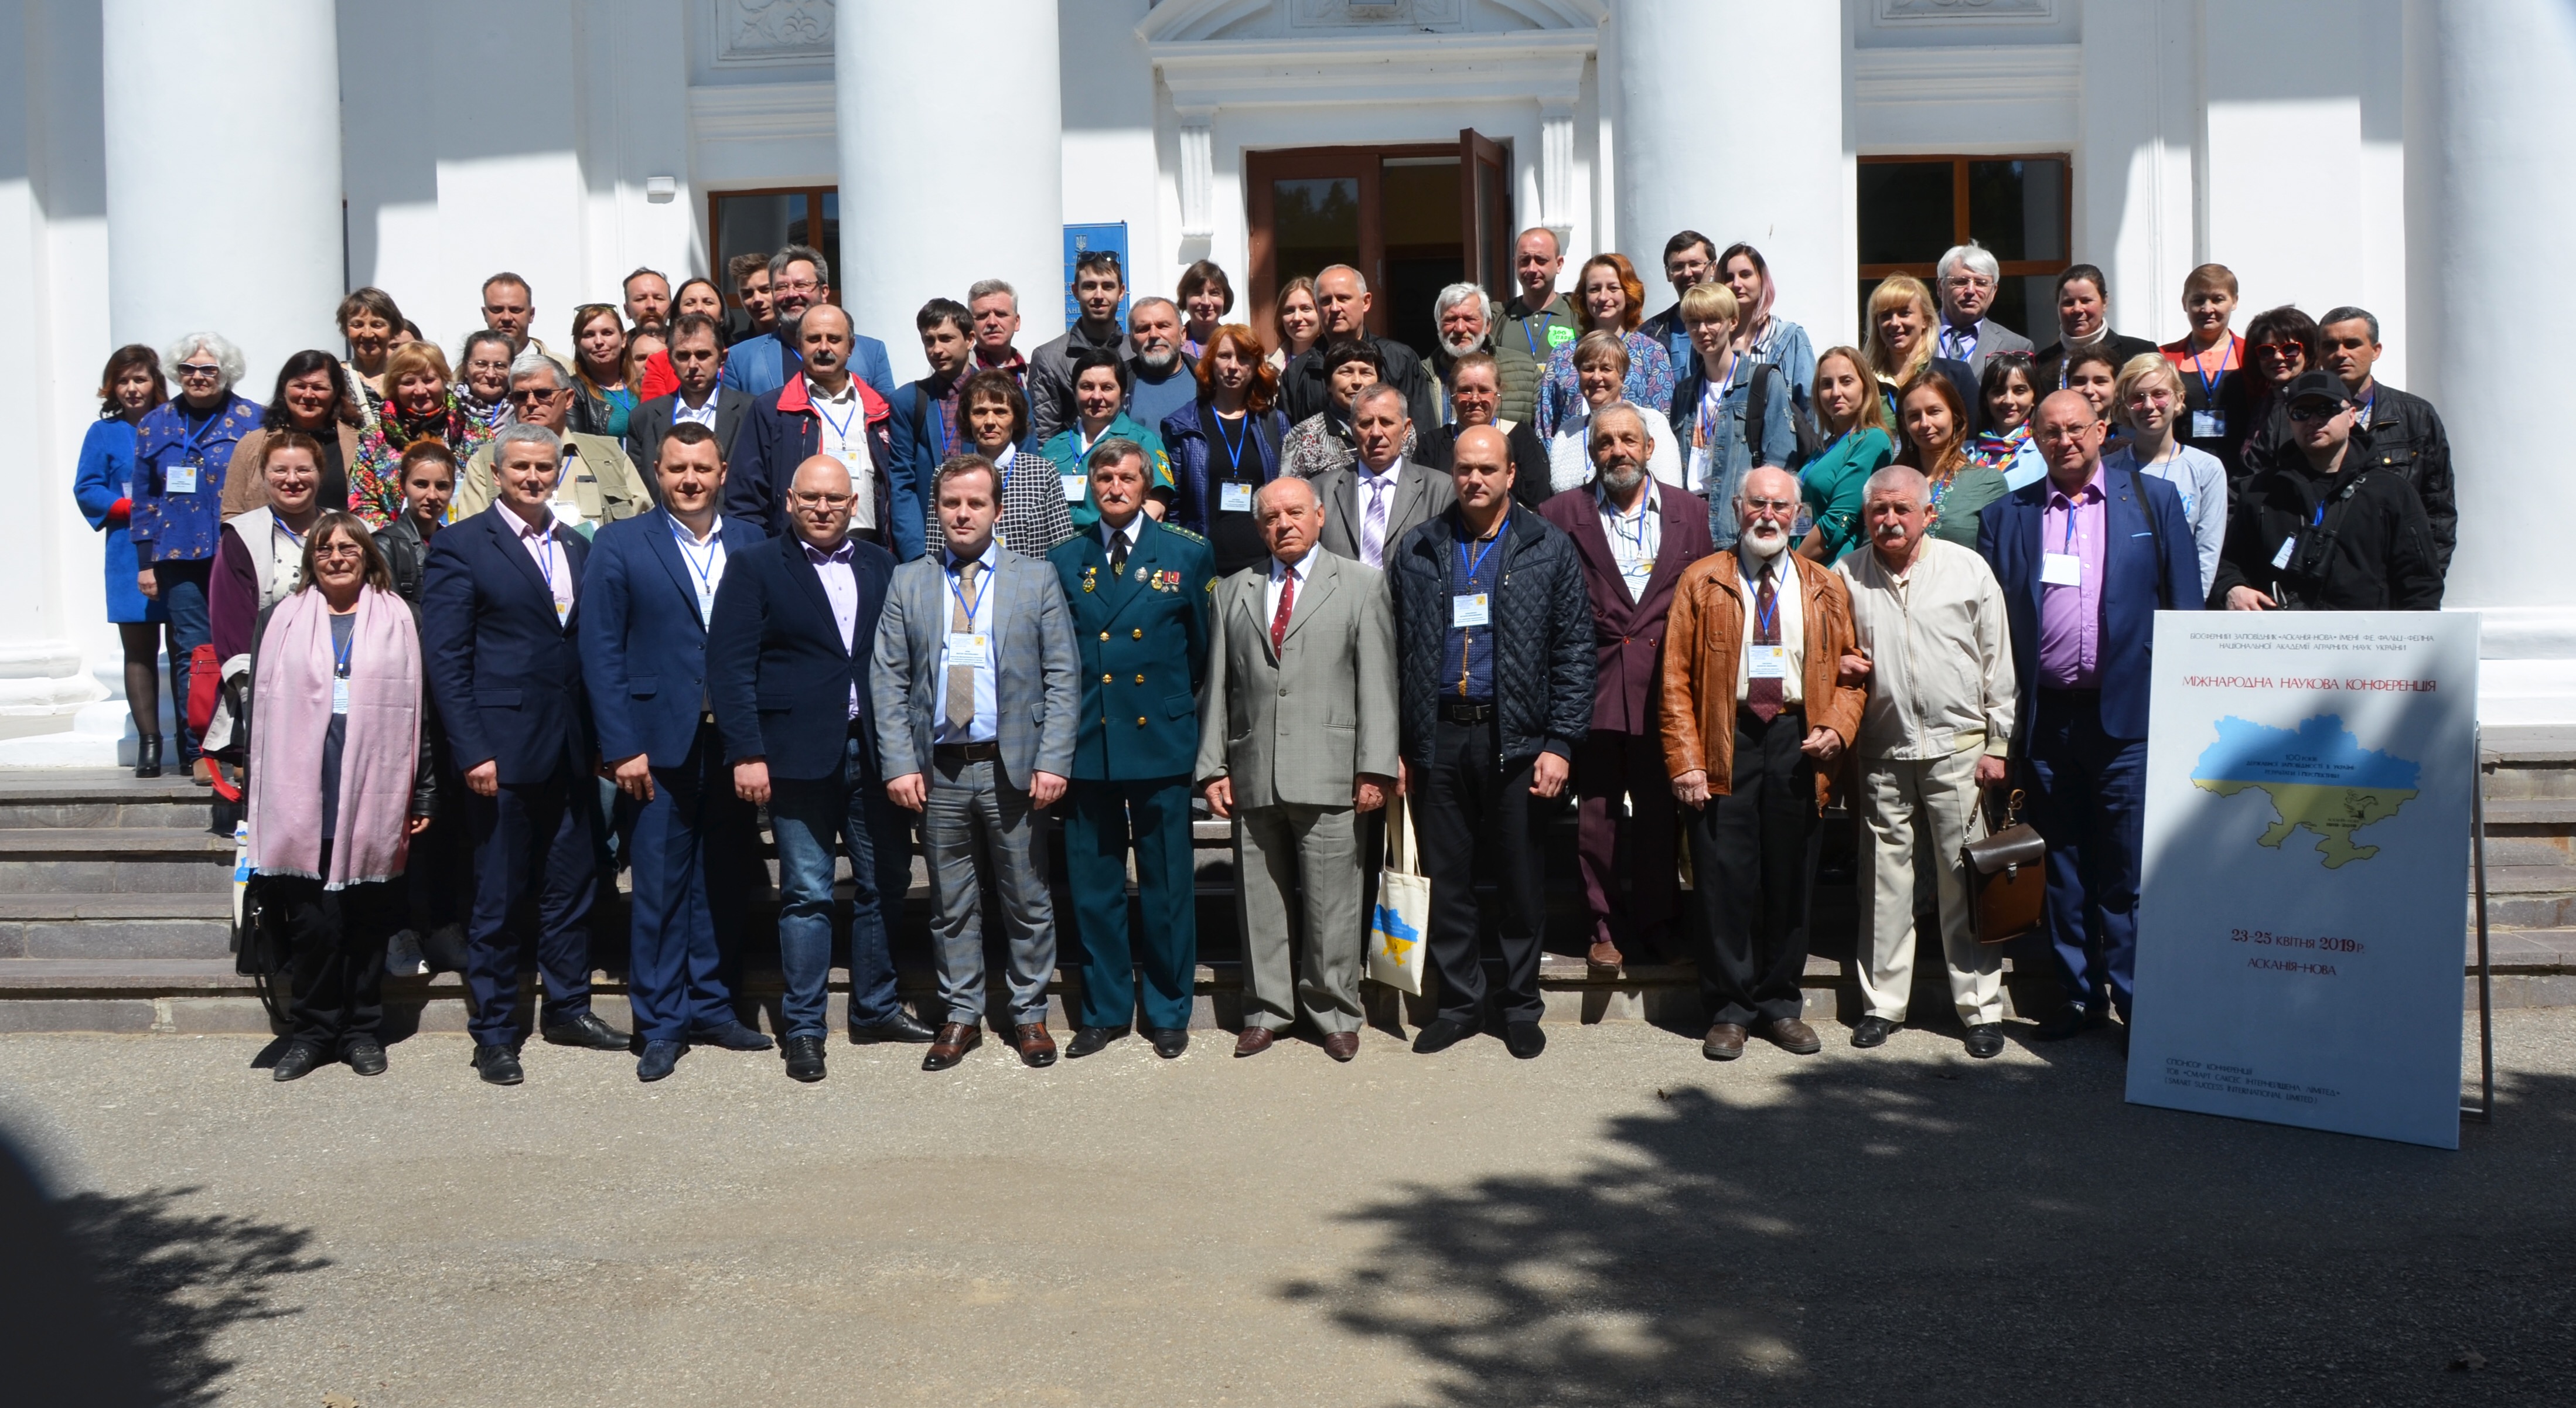 Міжнародна наукова конференція «100 років державної заповідності в Україні: результати і перспективи»